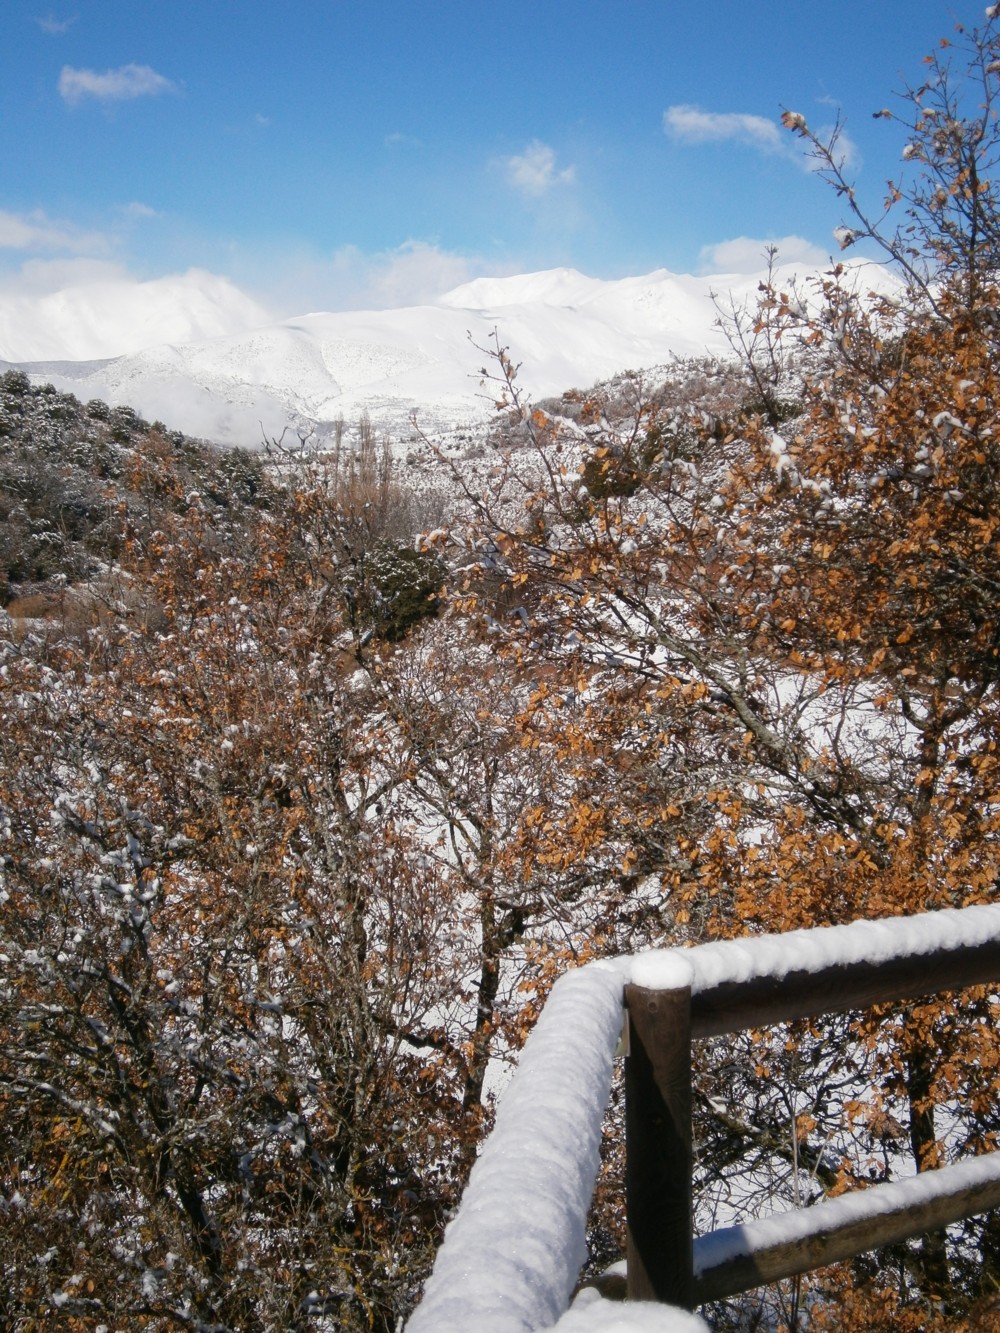   - Recull nevada hivern 2013 Turisme Rural casa l'hereu